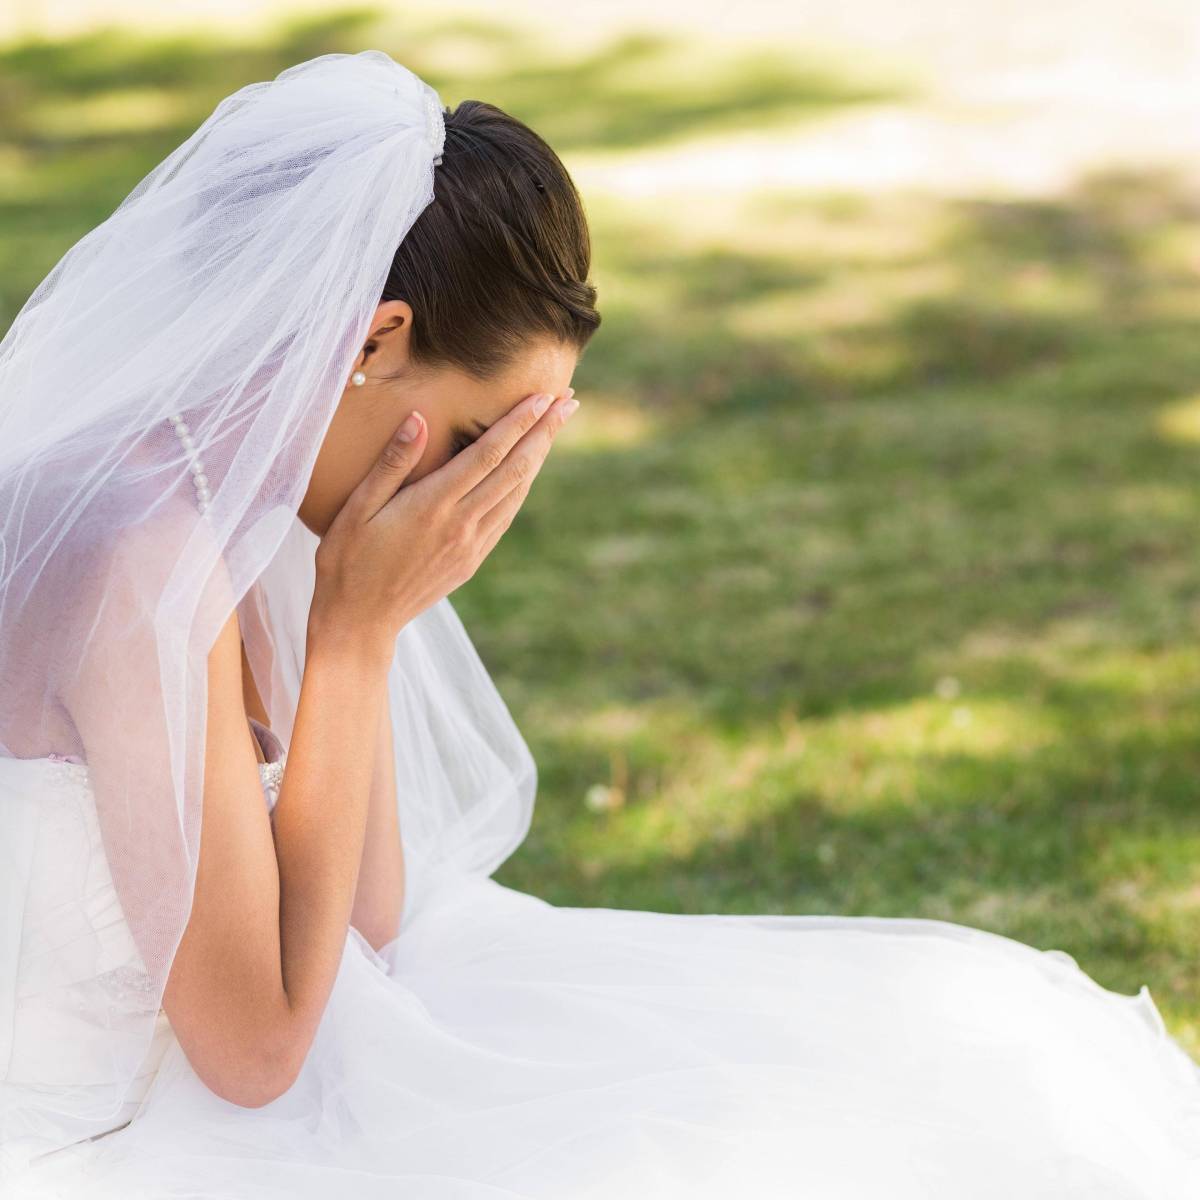 Hochzeit: Veranstalter stürzt Brautpaare in die Krise – wie konnte DAS passieren?